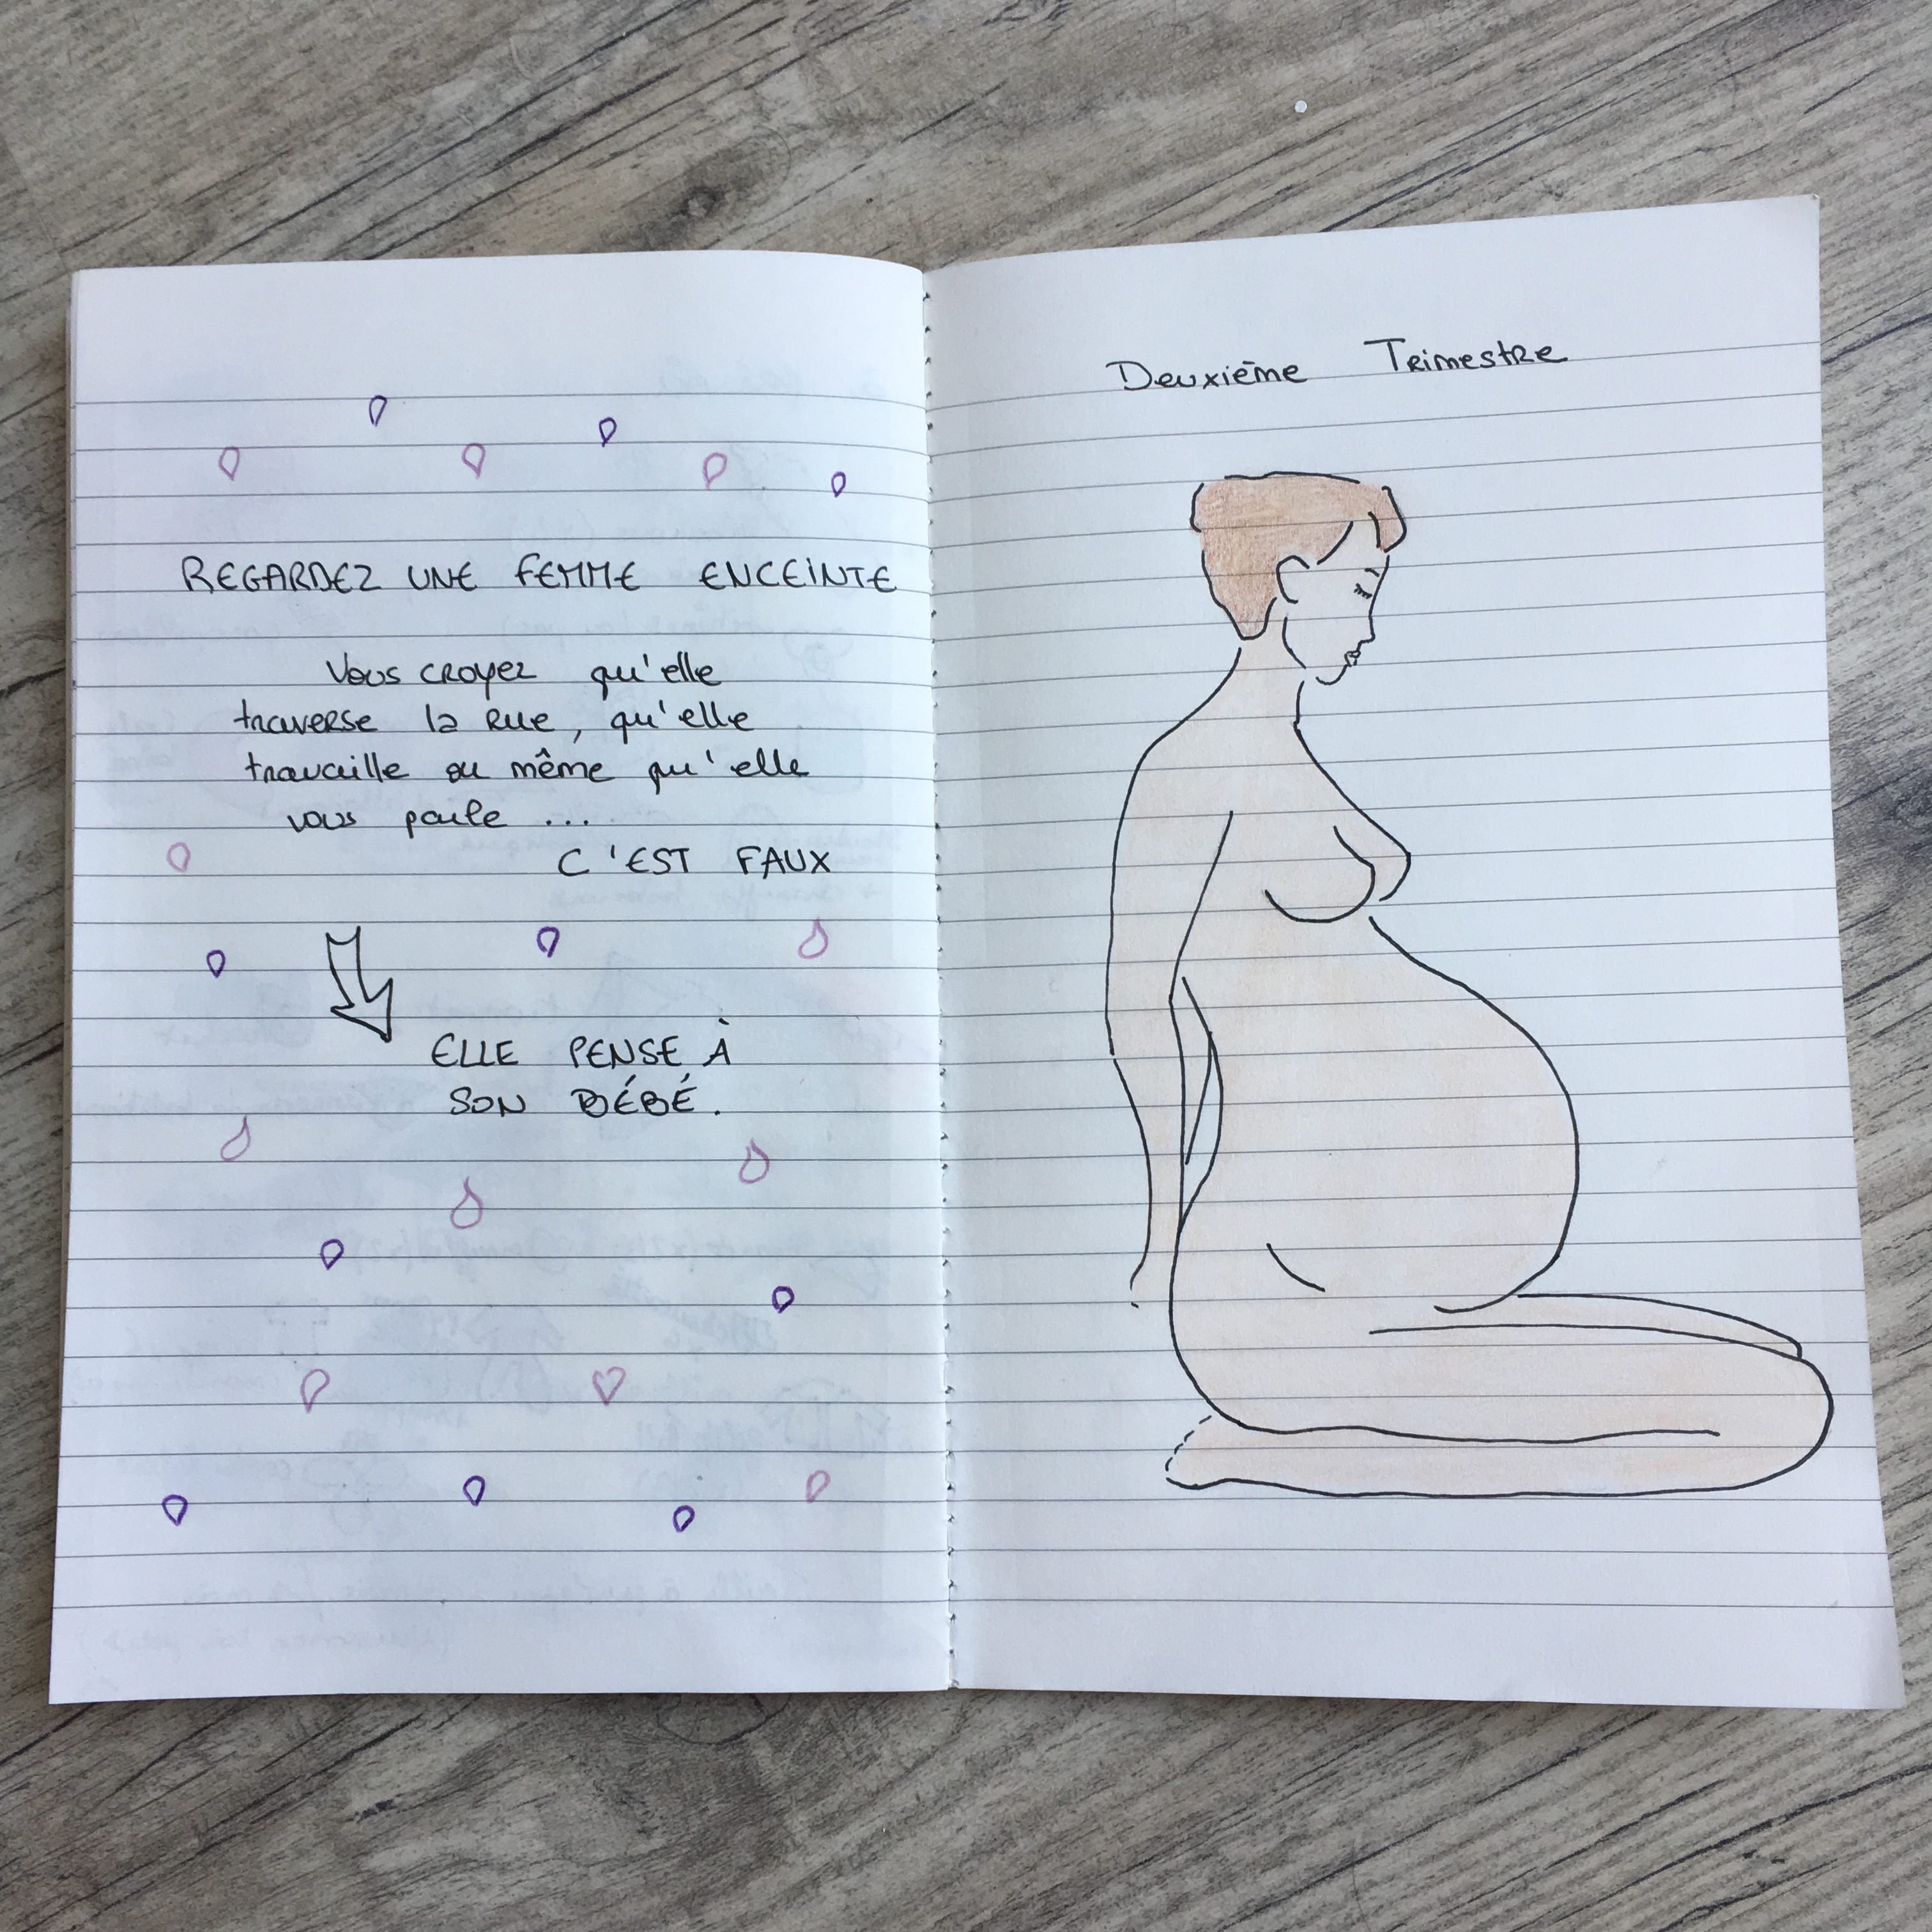 Livre de grossesse - Le Livre Bleu